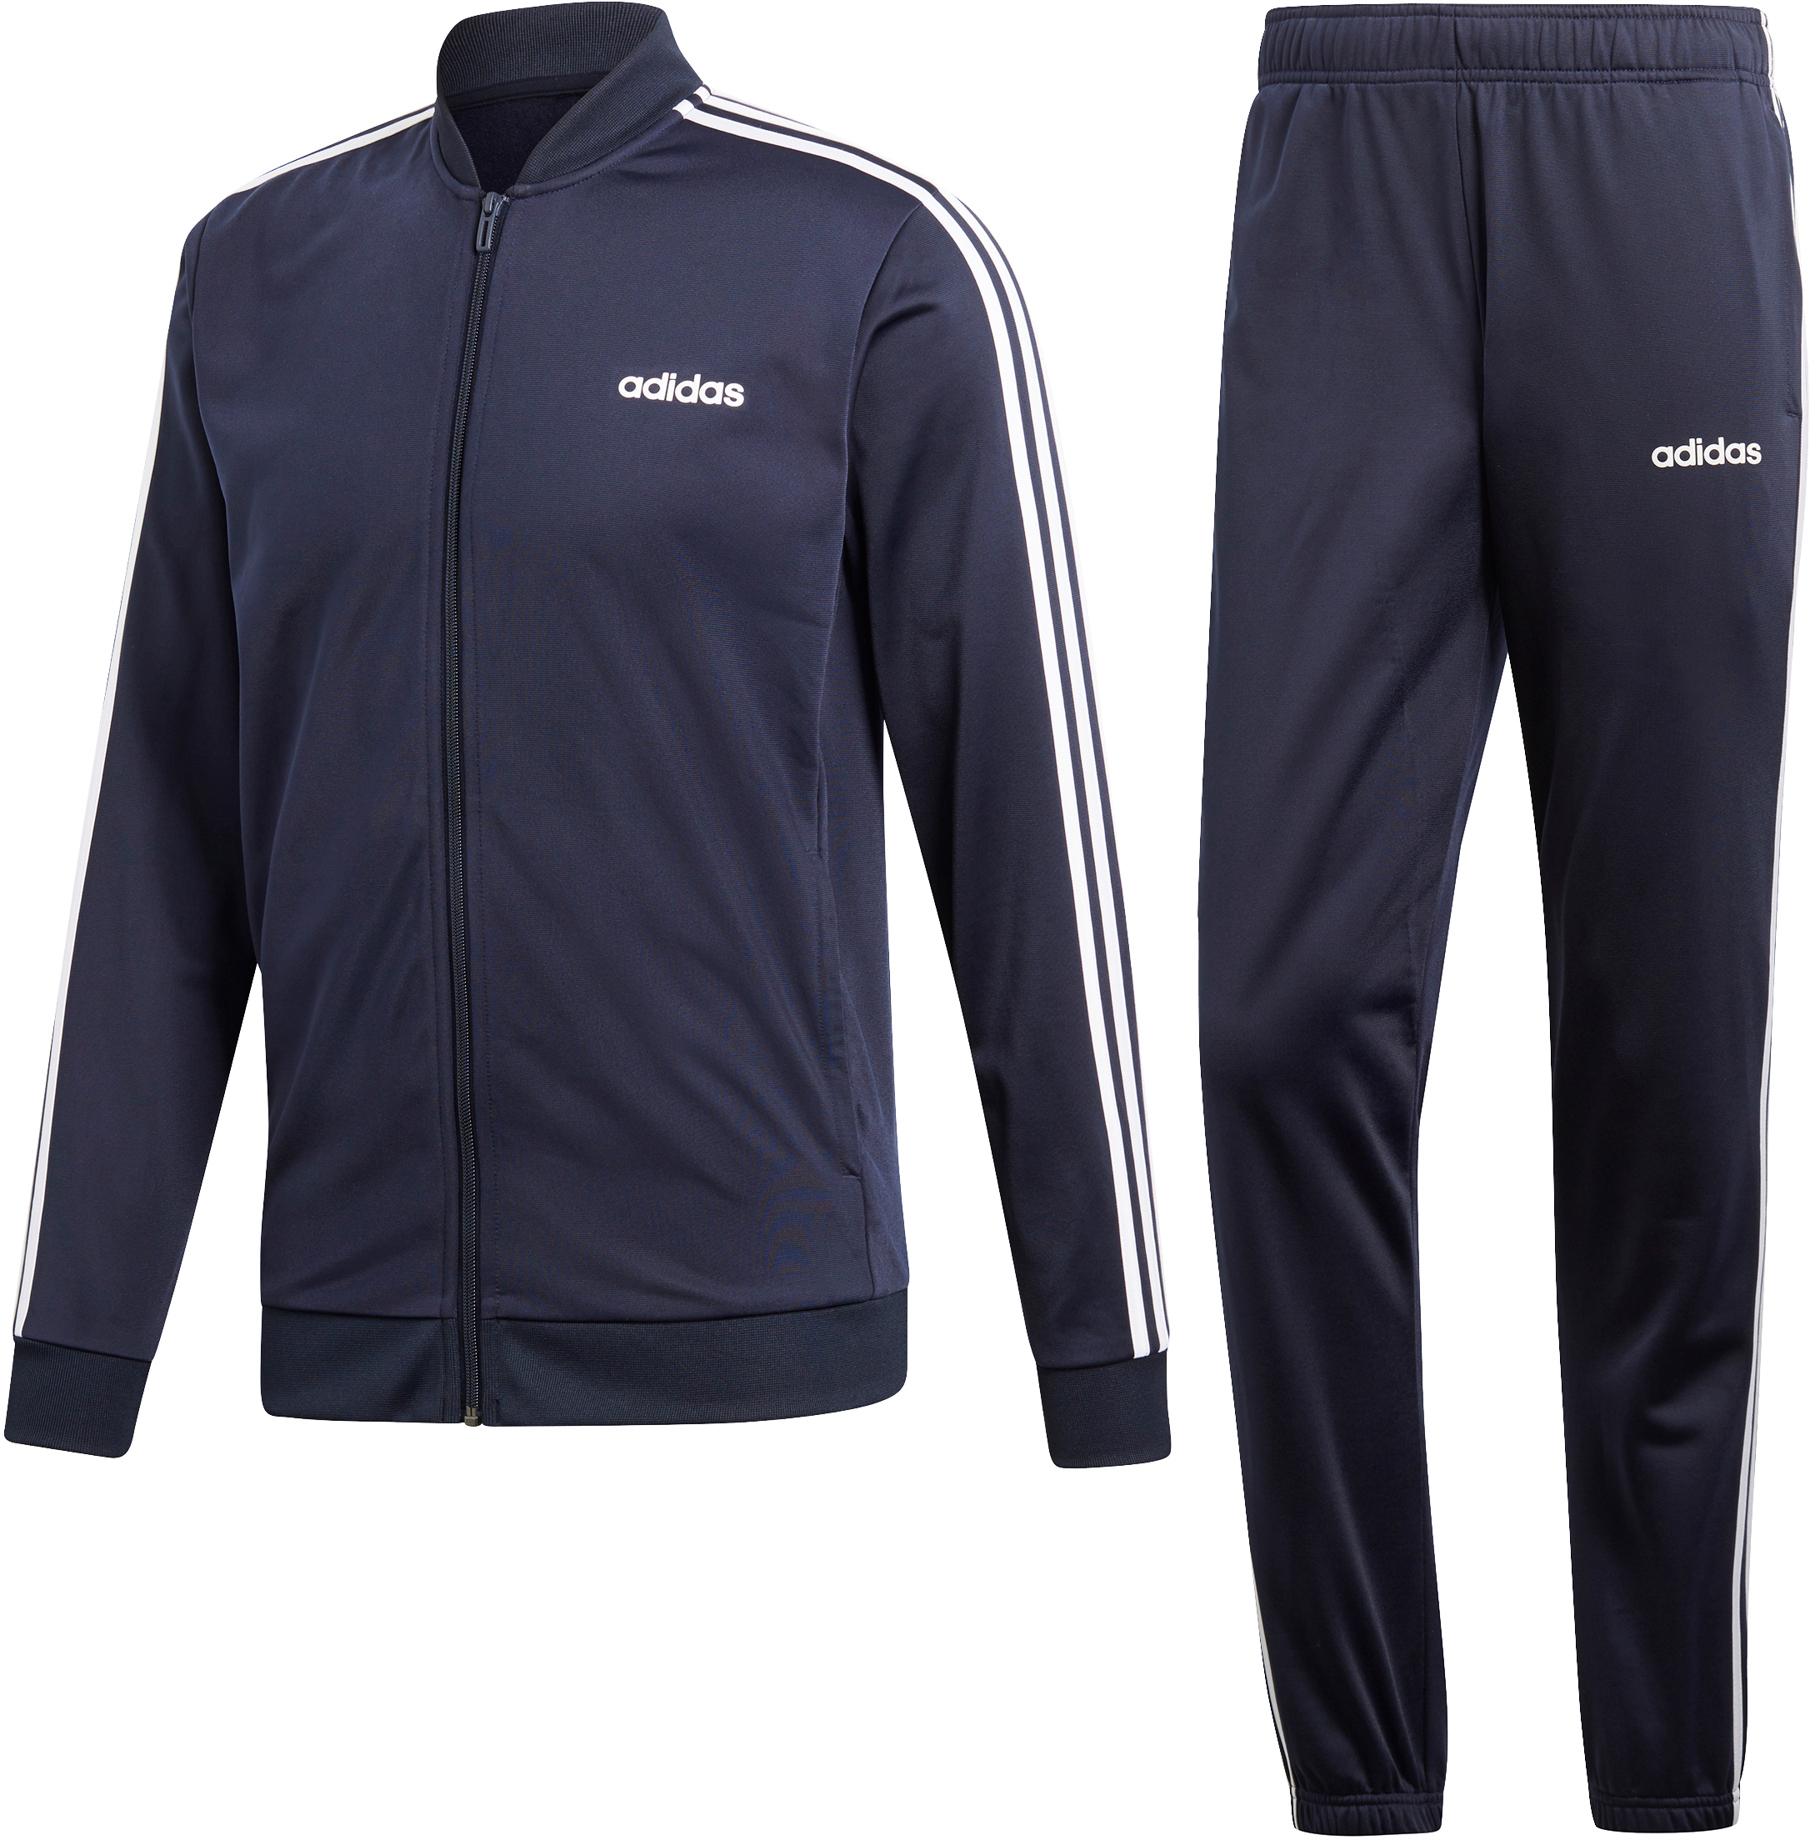 Adidas | Moderne Sportswear im SALE bei SportScheck